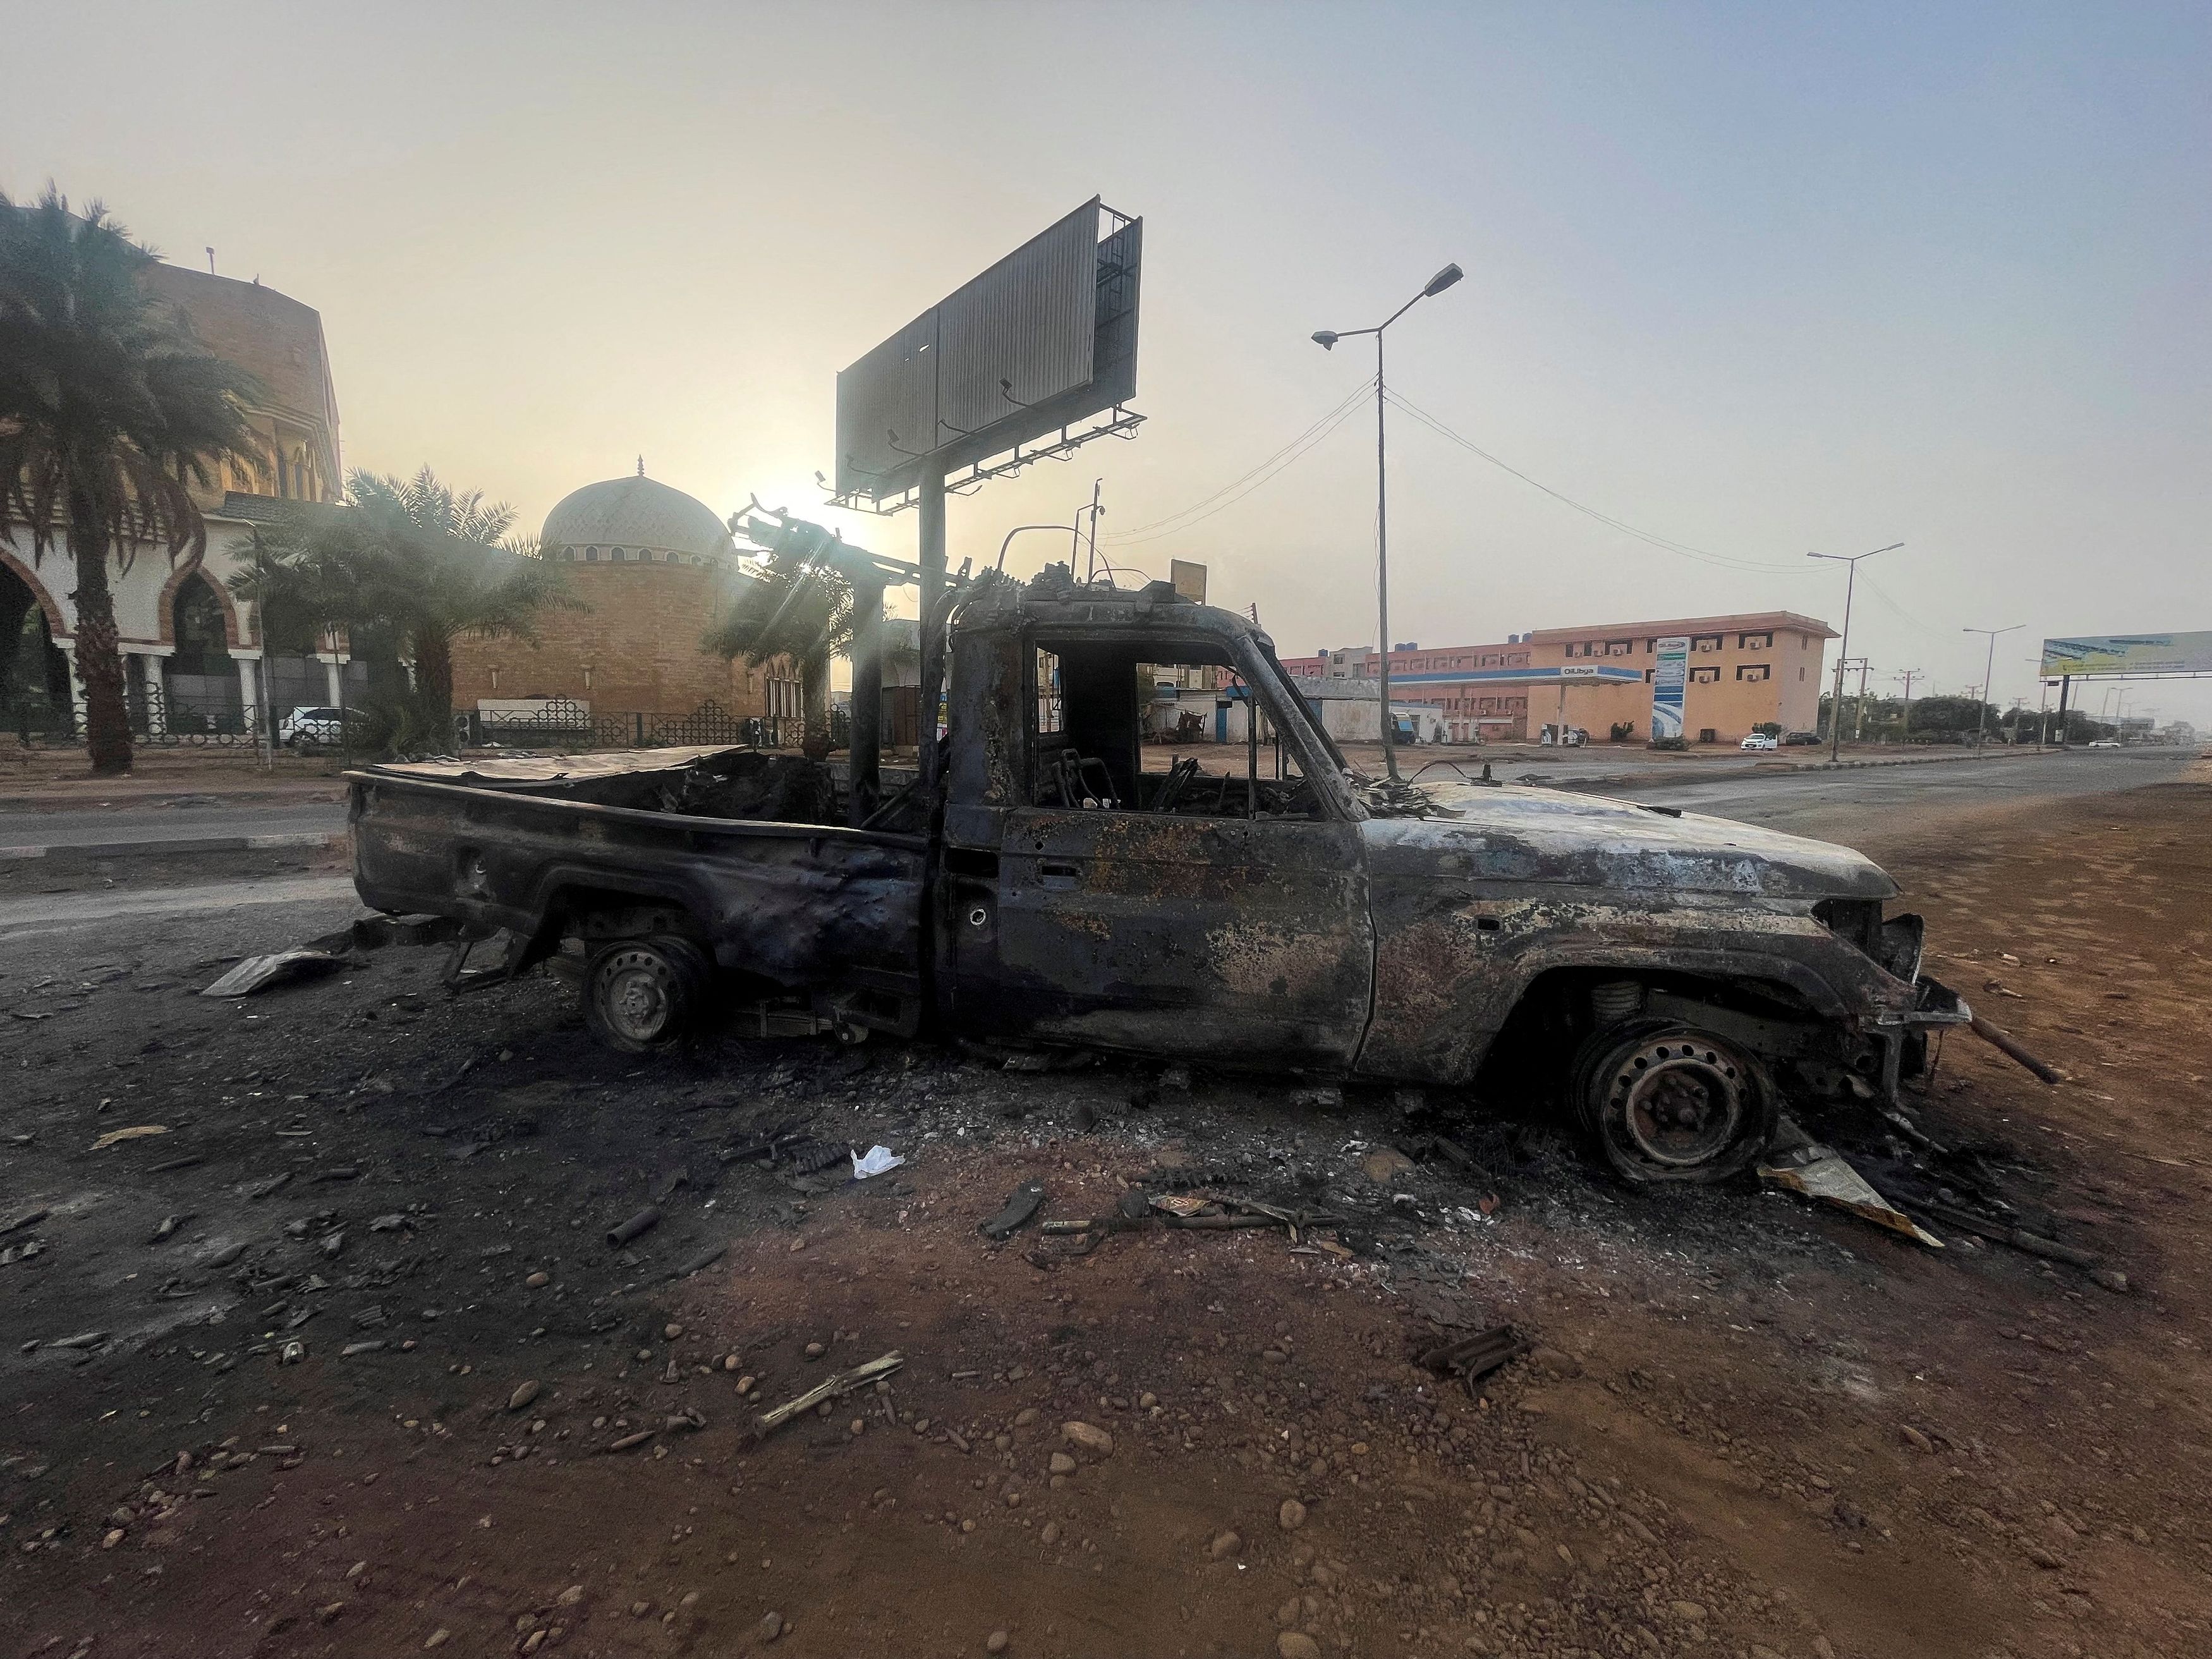 Πόλεμος στο Σουδάν: Δεν τηρήθηκε και πάλι η κατάπαυση του πυρός παρά το ξεκίνημα της γιορτής Έιντ - Εκρήξεις στο Χαρτούμ